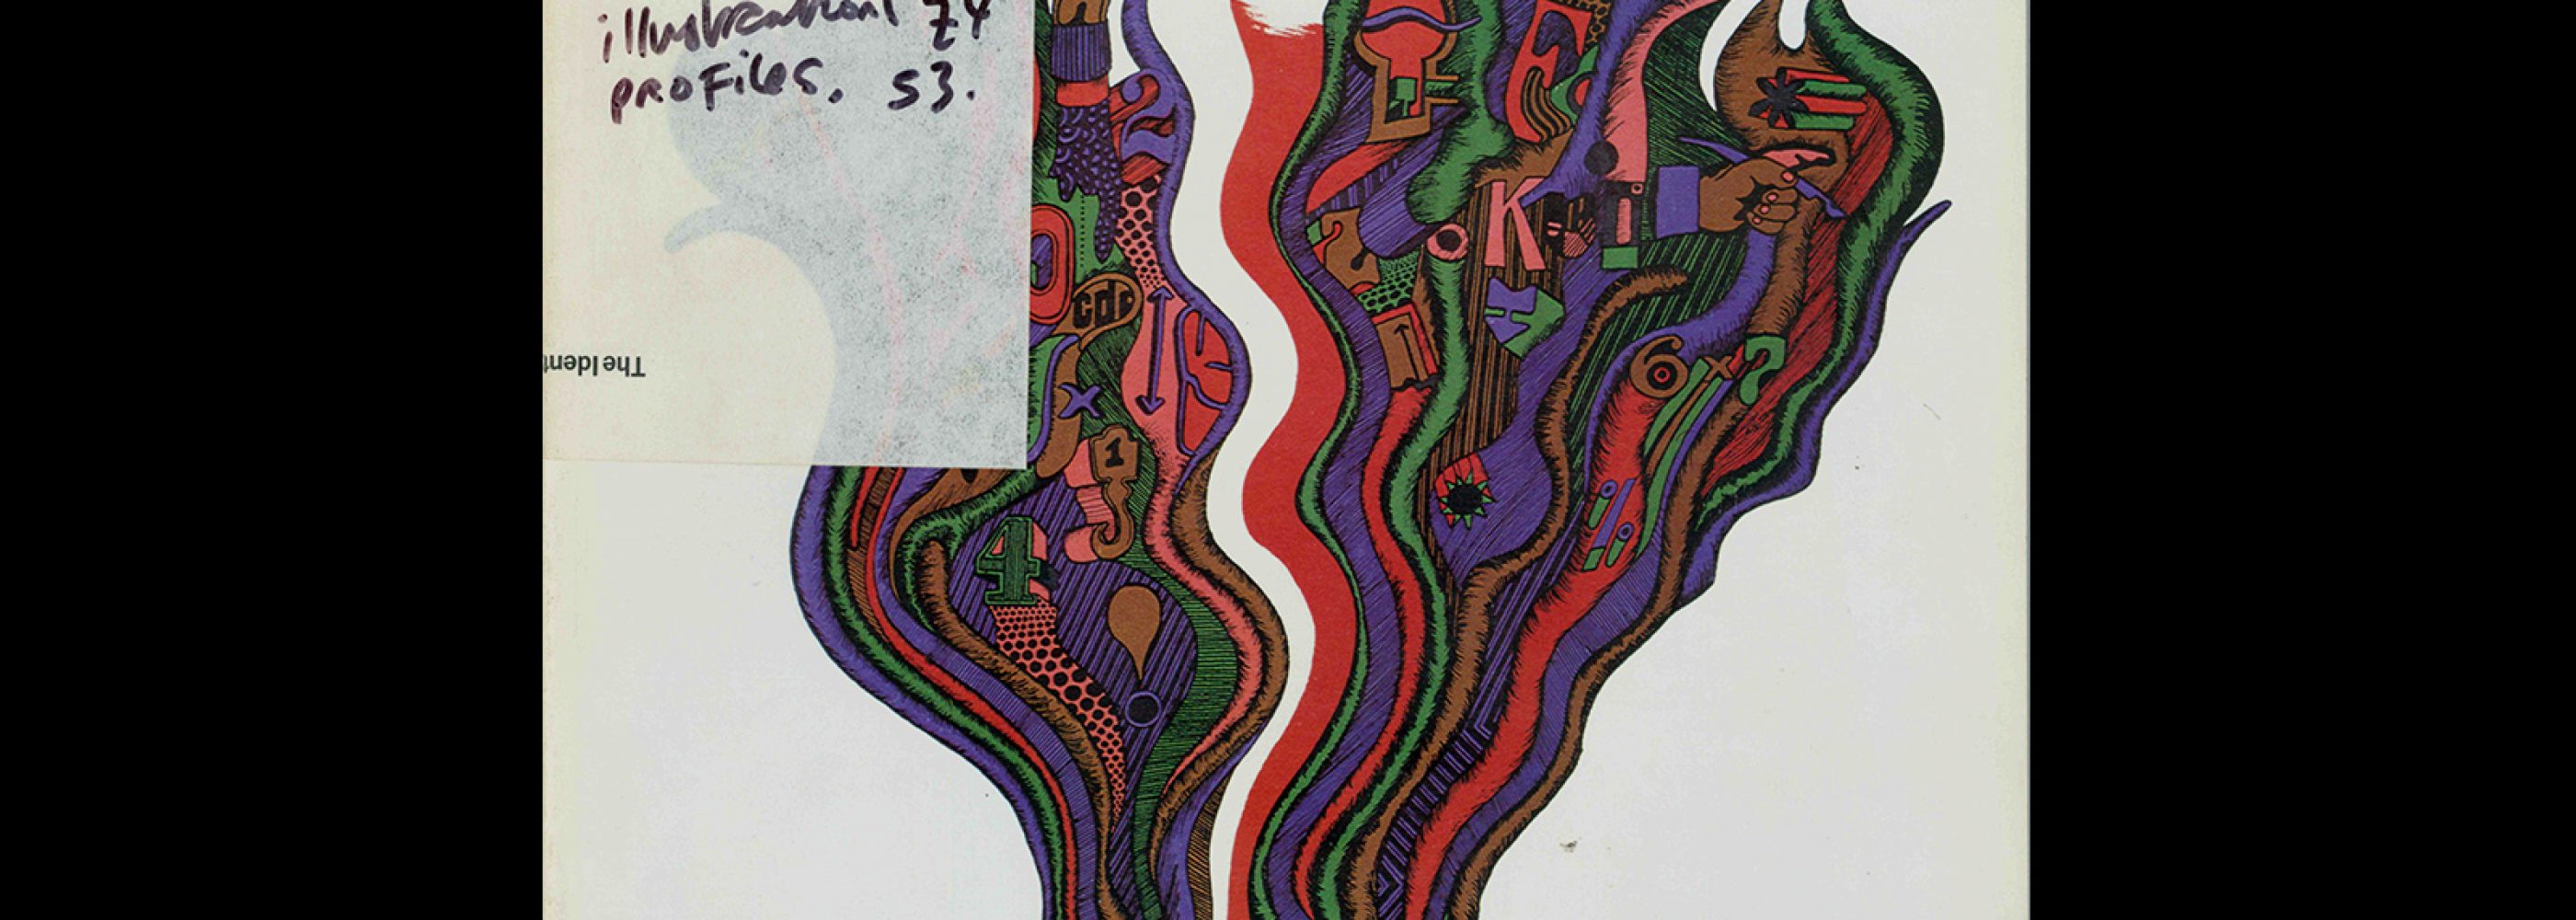 Idea 169, 1981-11. Cover design by Jan Sawka